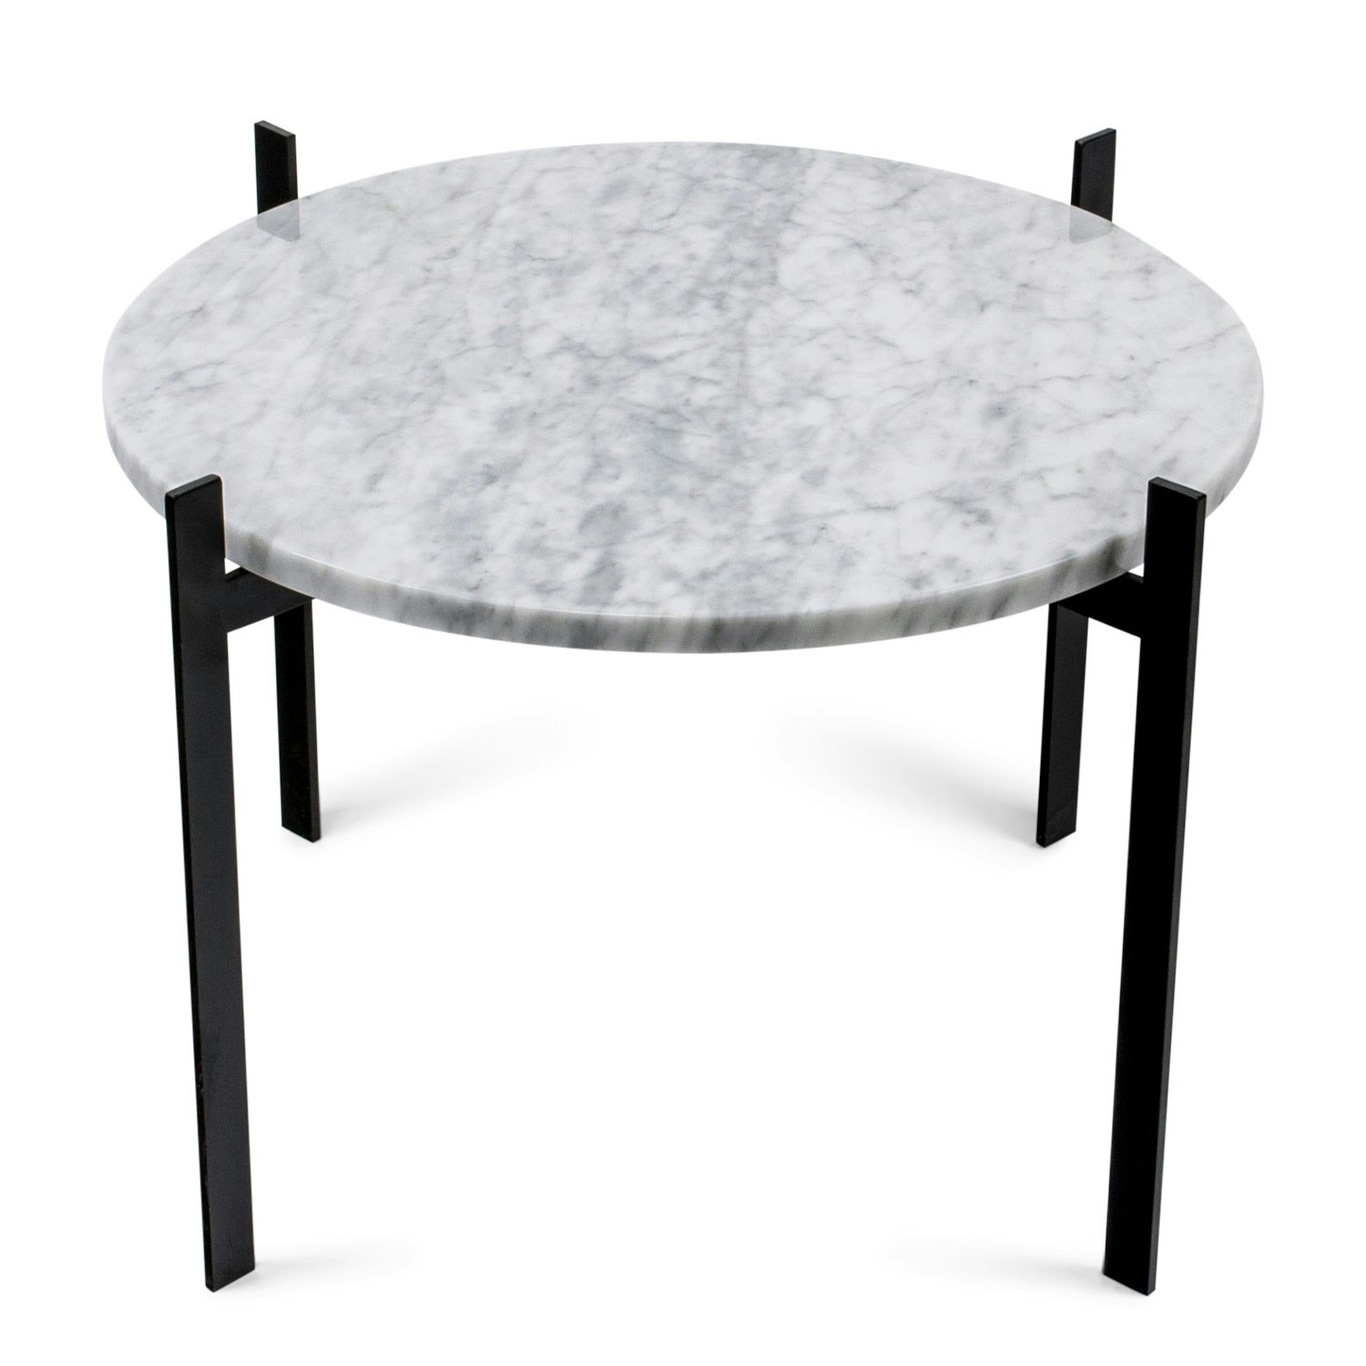 Single Deck Pöytä, Valkoinen Marmori/Musta